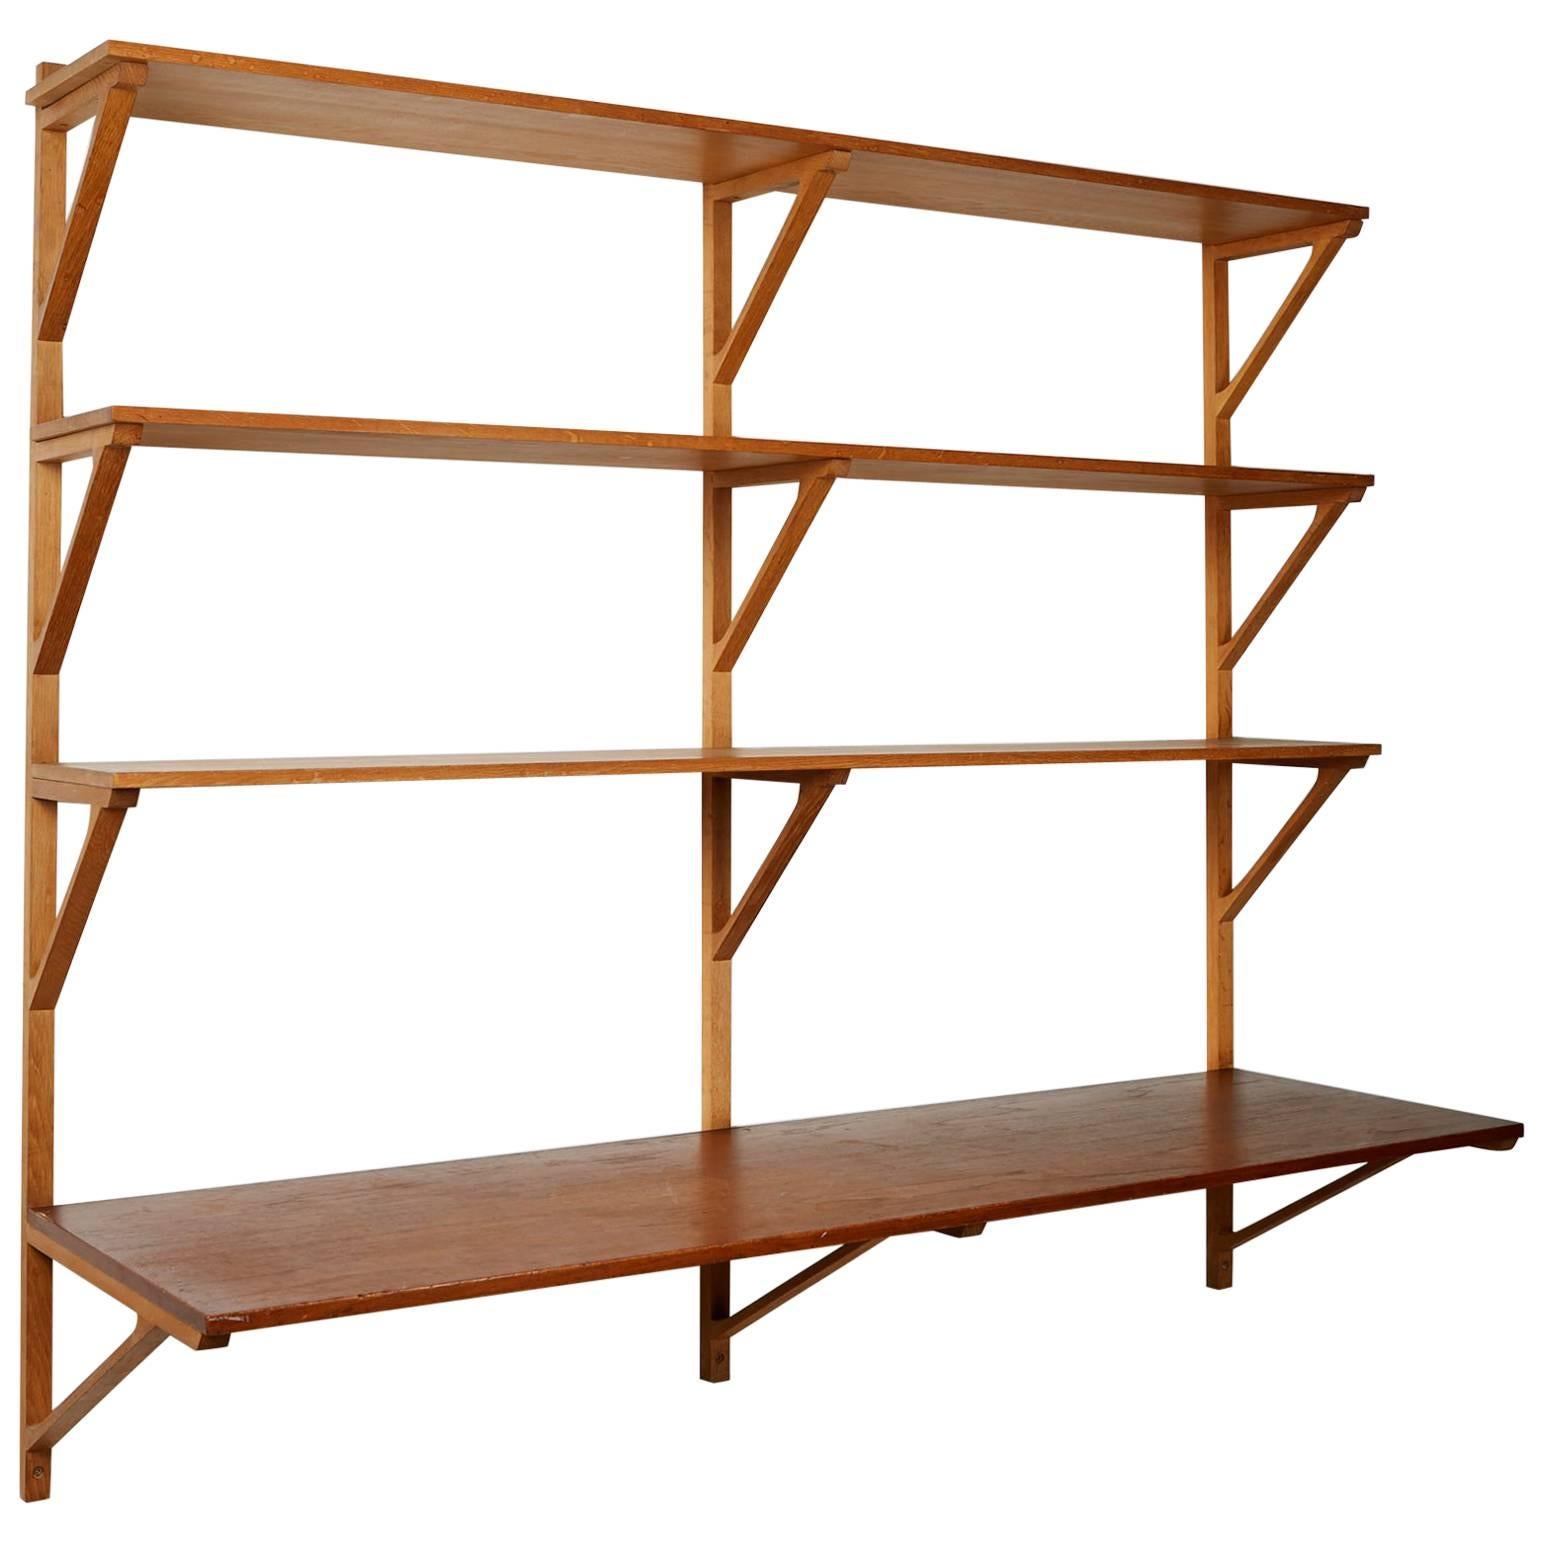 Book Shelves Designed by Börge Mogensen for Erhard Rasmussen